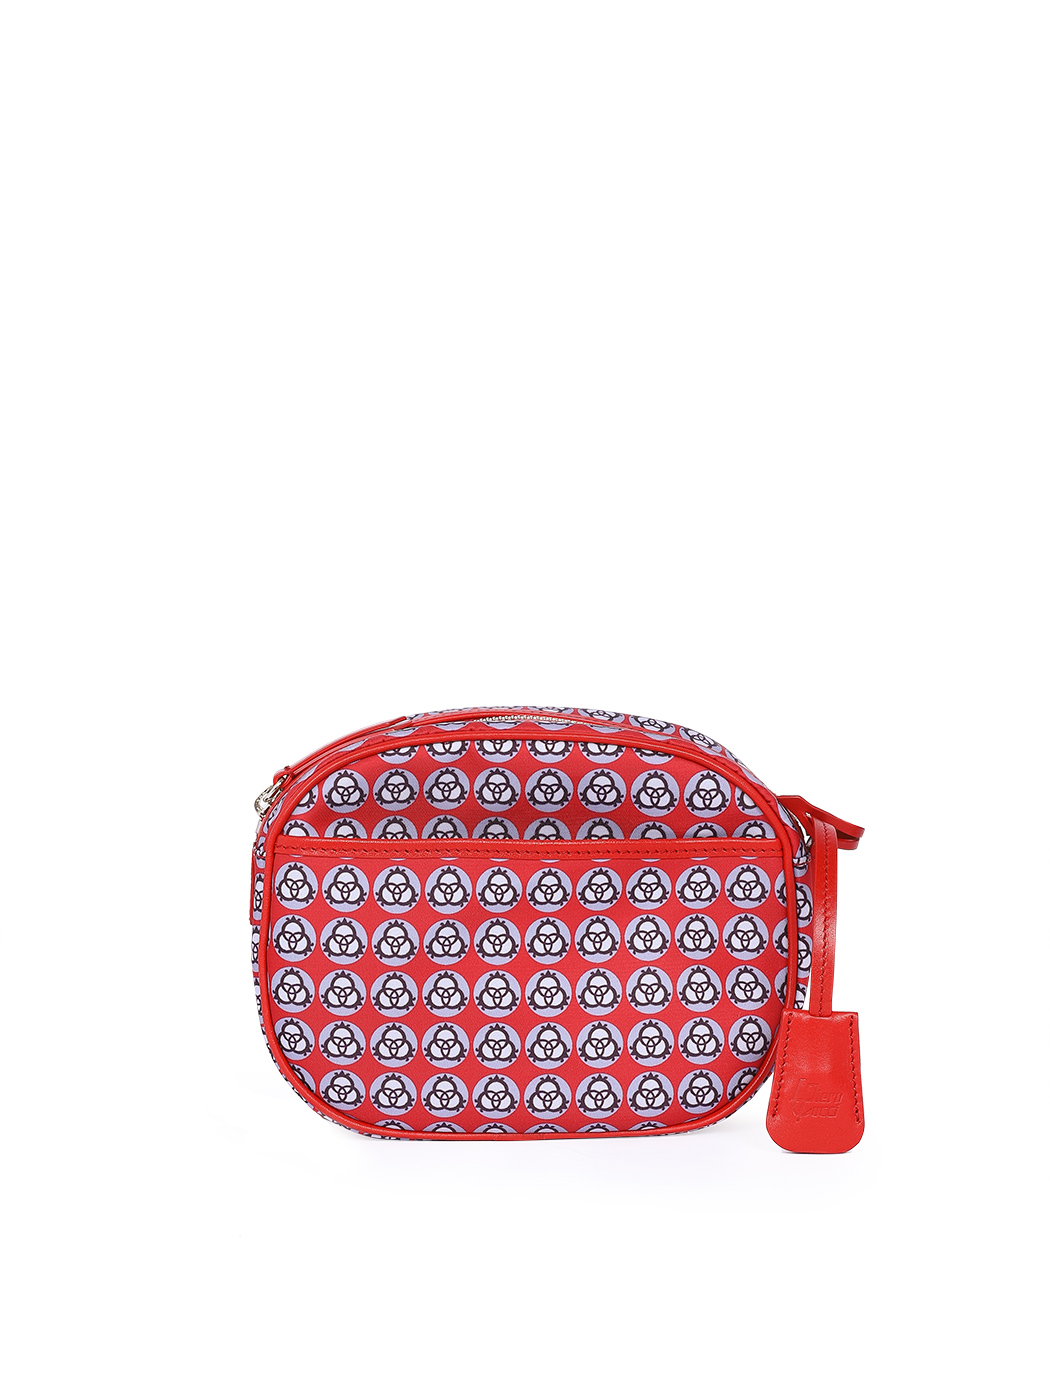 Легкая сумка кросс - боди красного цвета